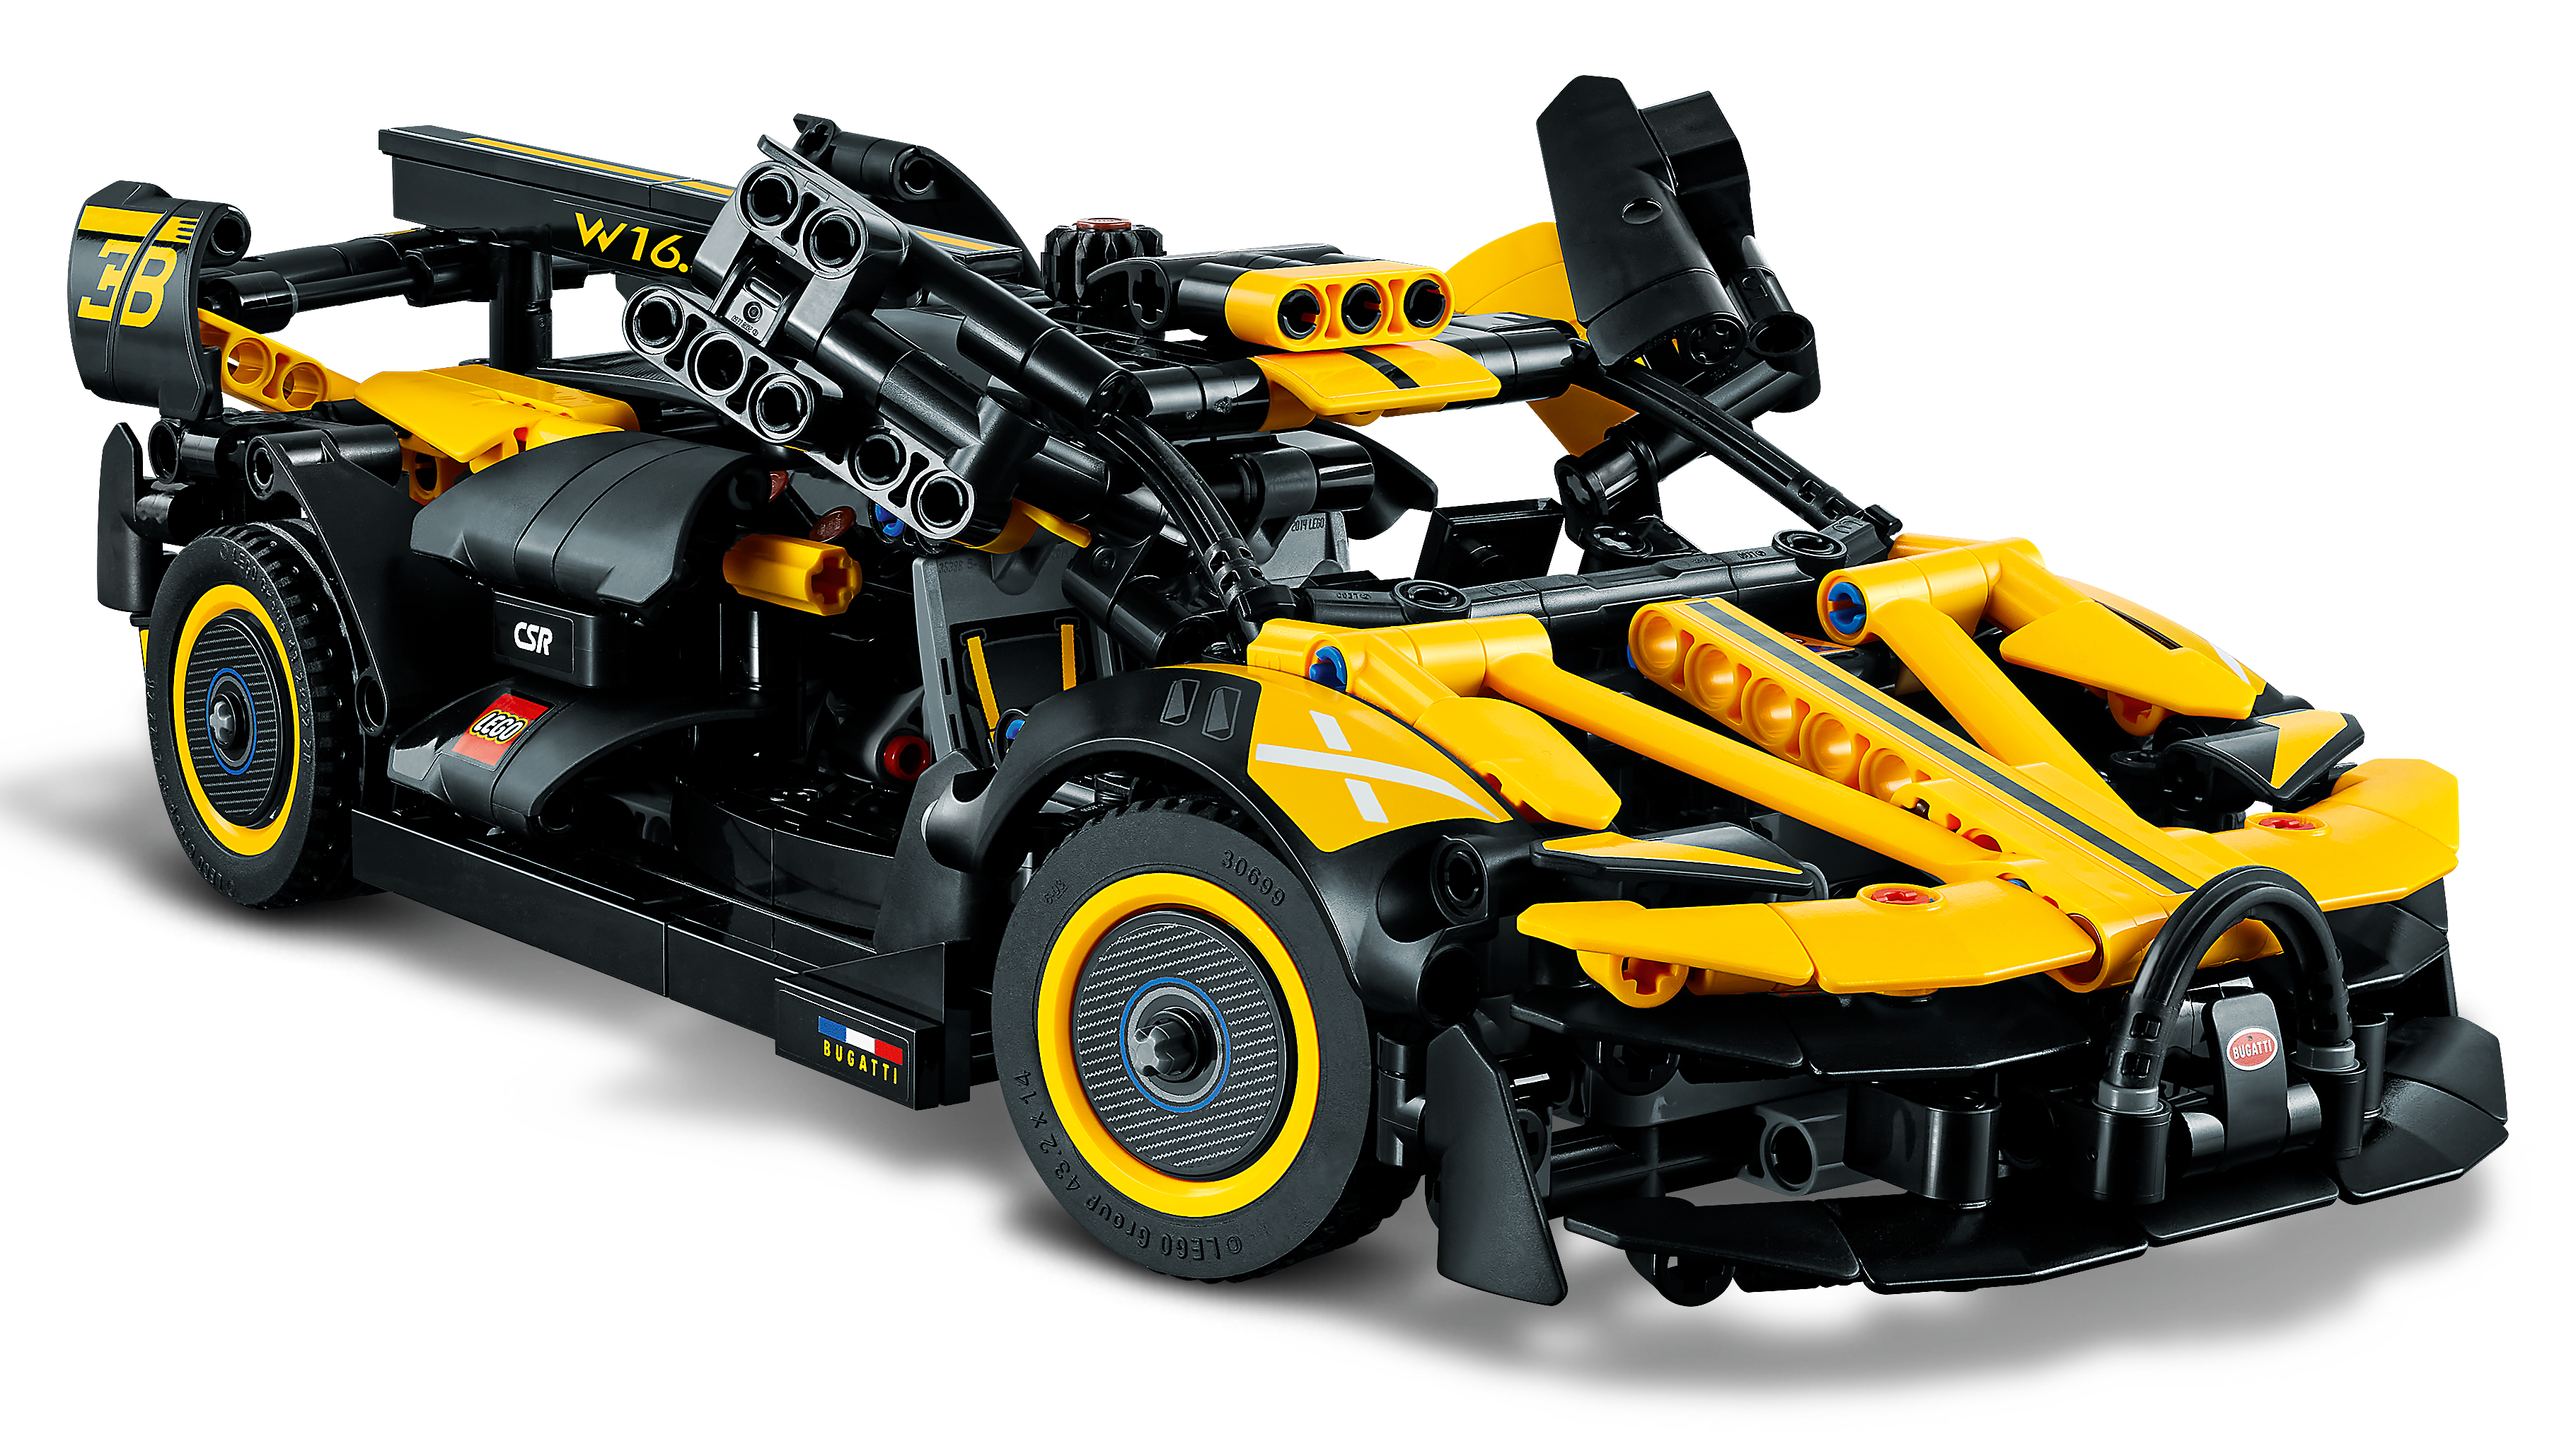 Dele Repræsentere Jeg var overrasket Bugatti Bolide 42151 - LEGO® Technic Sets - LEGO.com for kids